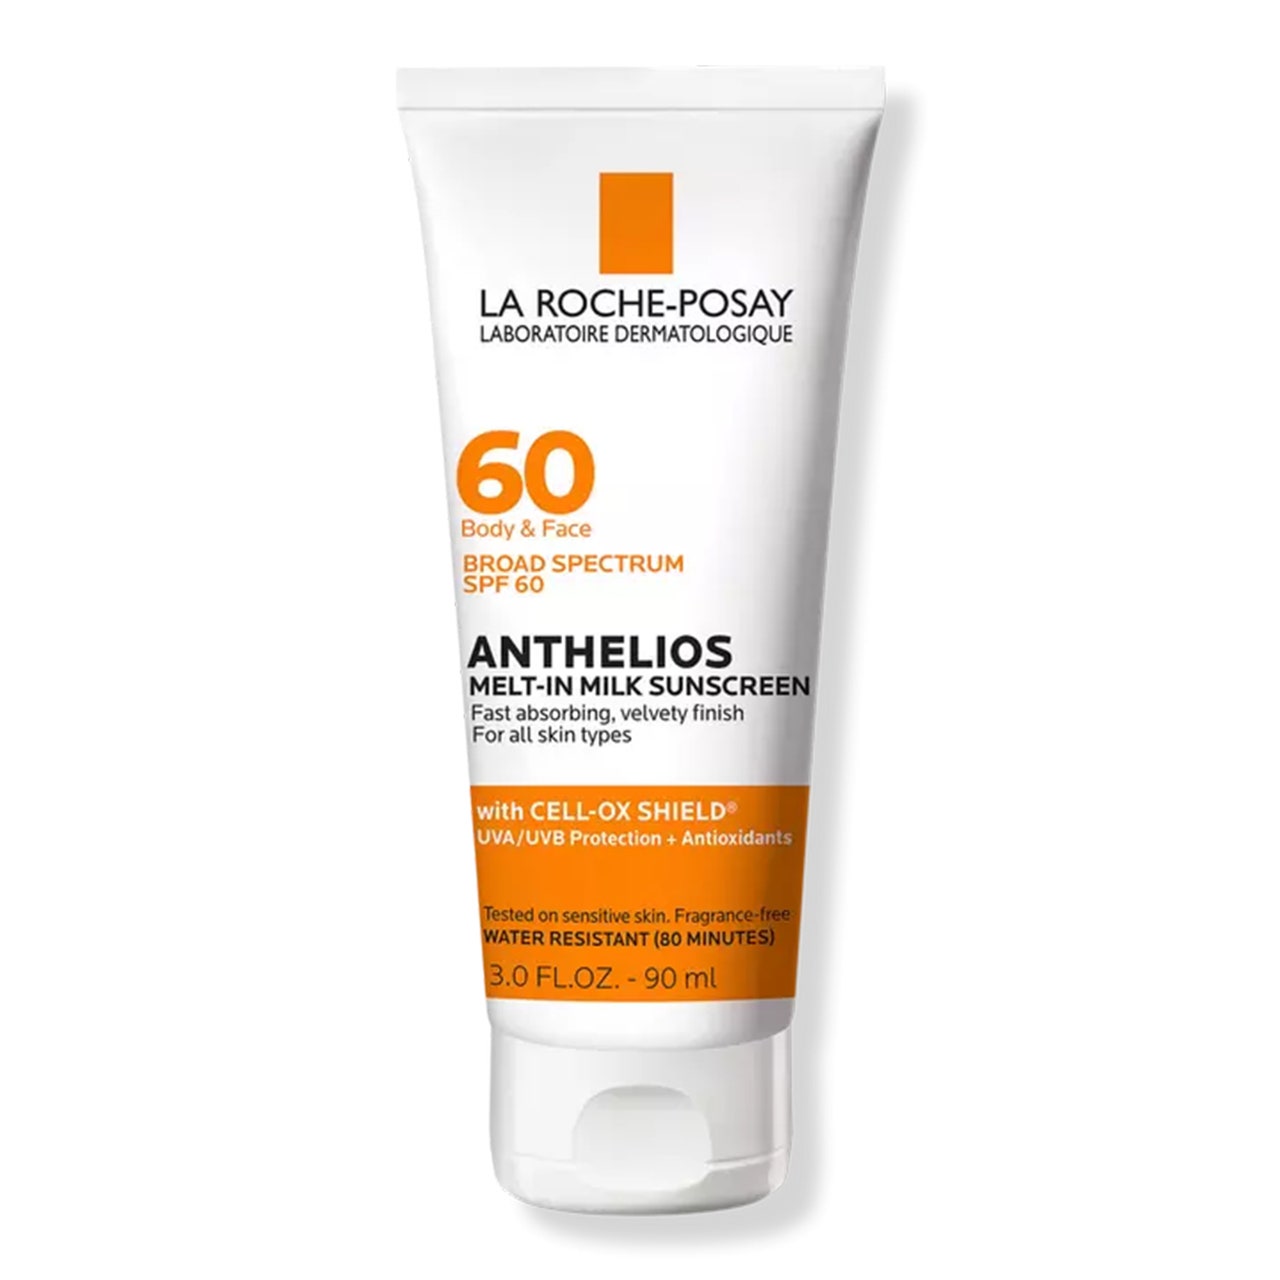 La Roche-Posay Anthelios Melt-In Milk Body and Face Sunscreen SPF 60, weiße Tube mit orangefarbenem Streifen auf weißem Hintergrund